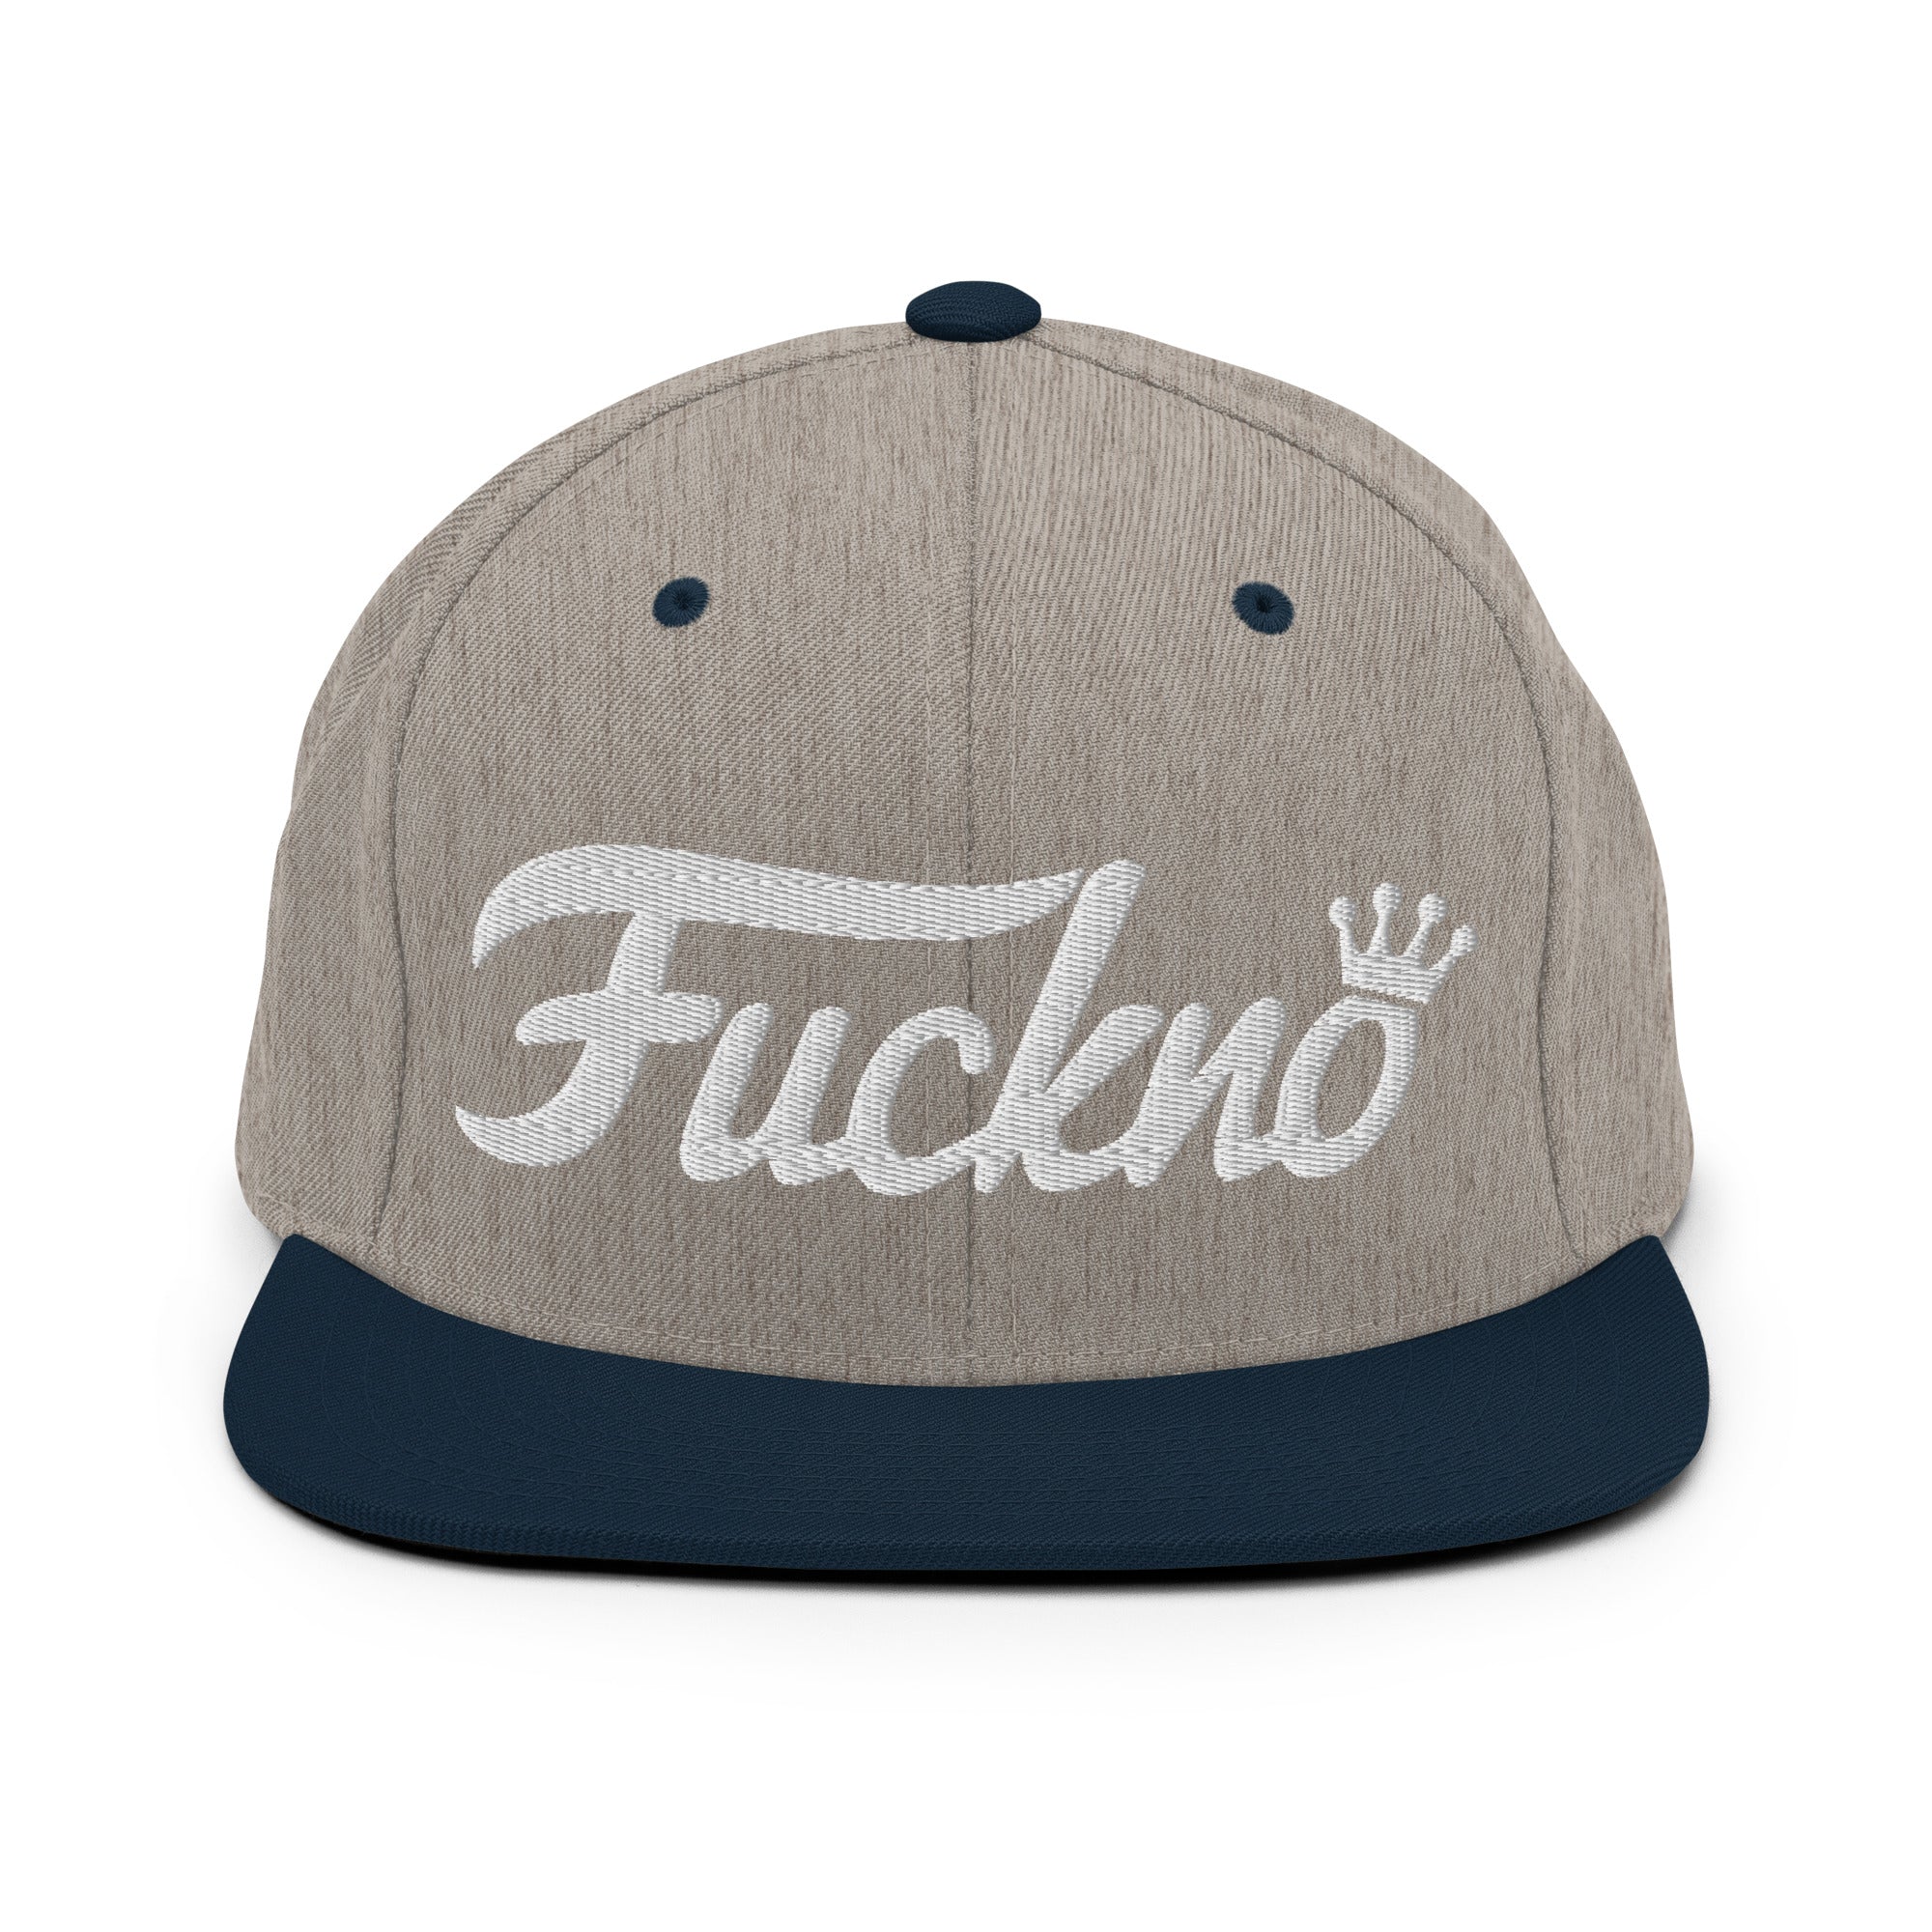 'fuck no' to Phunko Snapback Hat